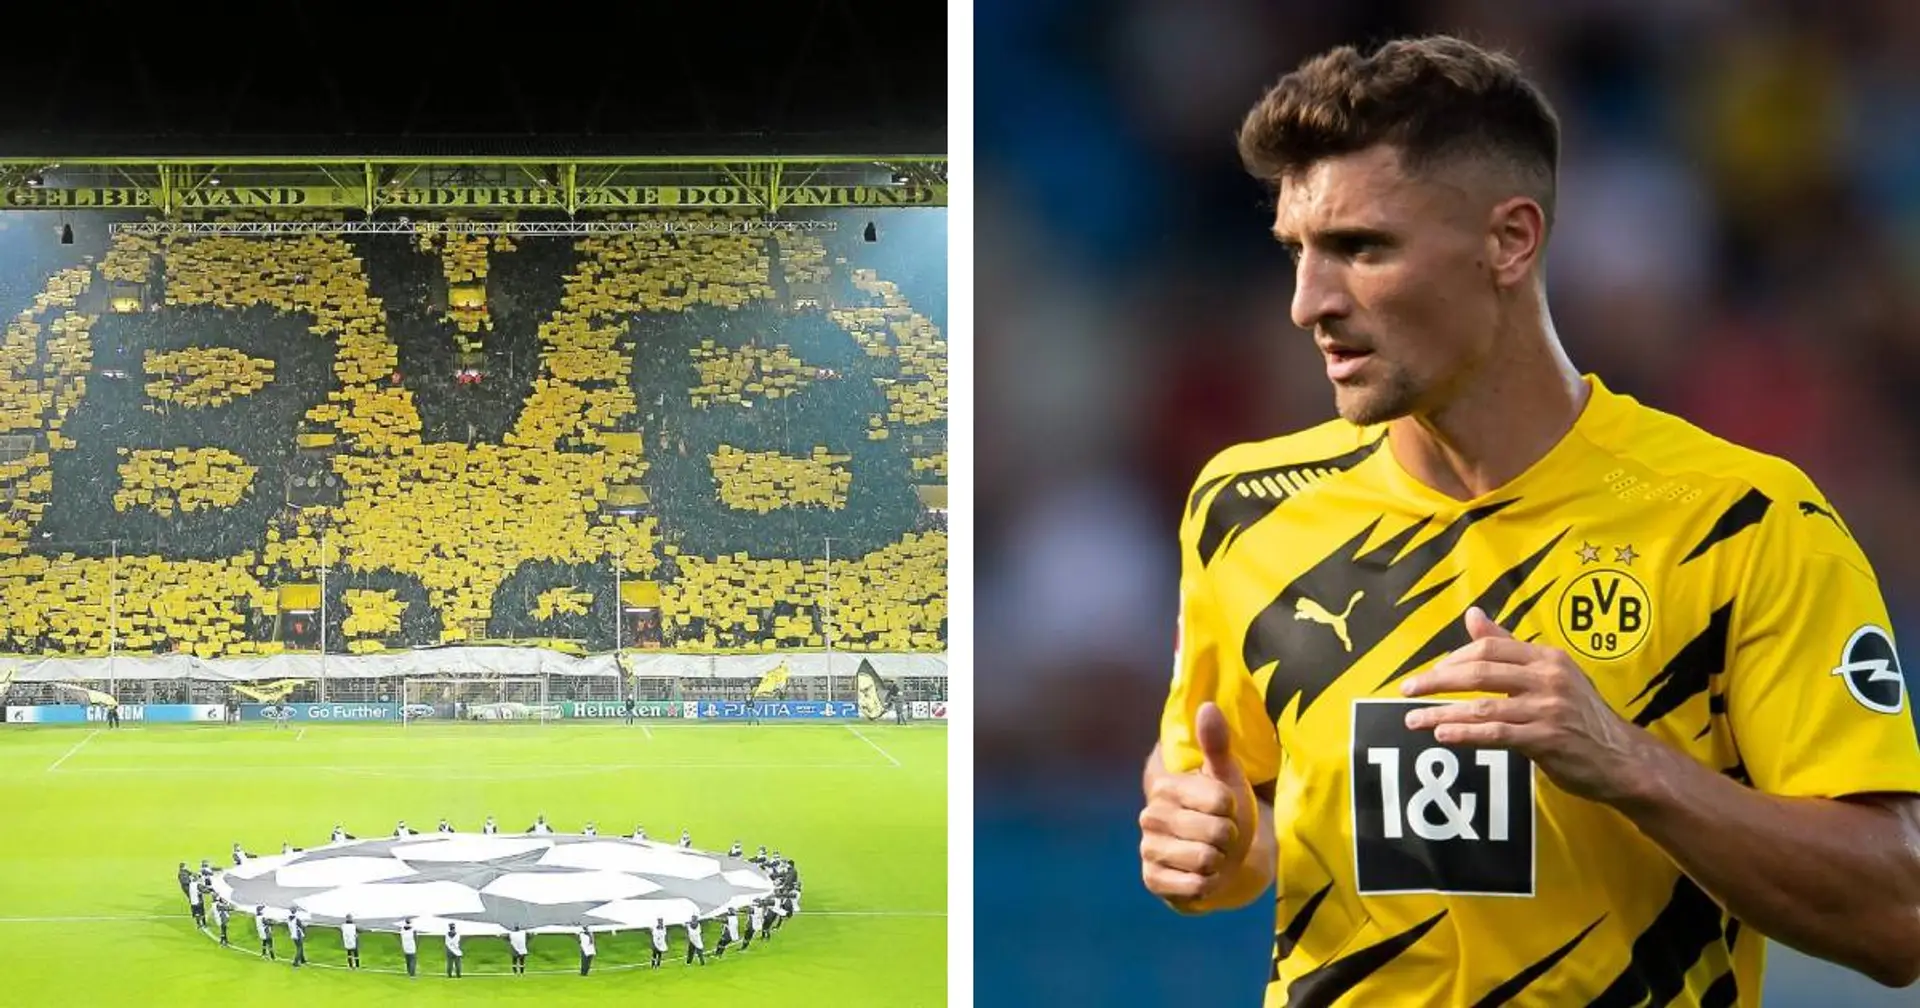 Hoffnung des BVB-Fans: Wenn Meunier vor der Gelben Wand eines Tages spielt, wird er aufblühen